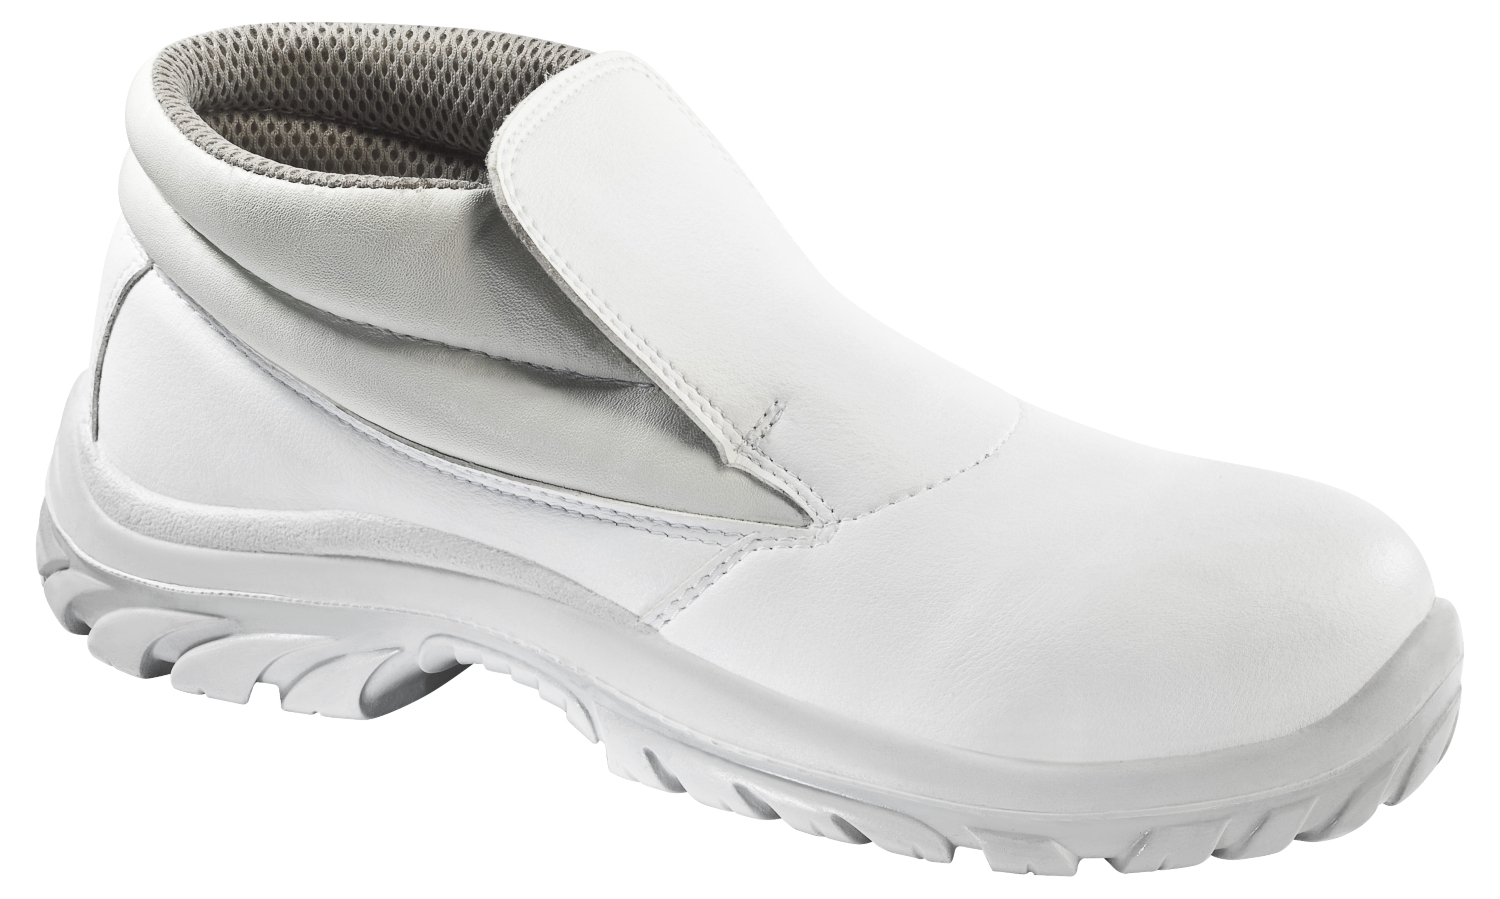  Chaussures de sécurité hautes Baltix - Blanc - S2 SRC 